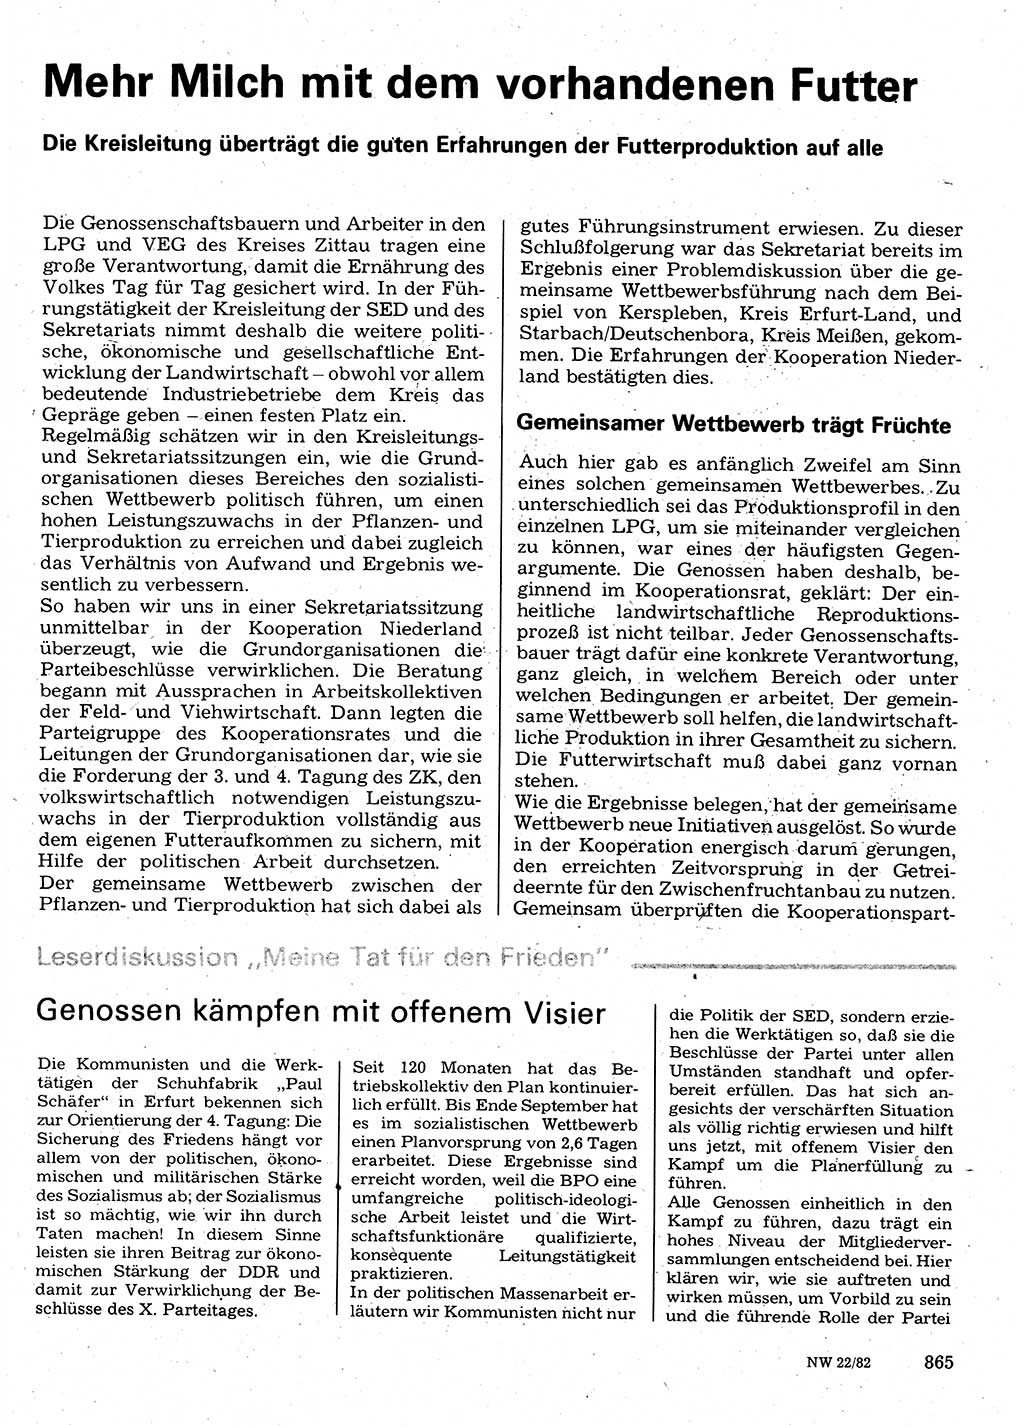 Neuer Weg (NW), Organ des Zentralkomitees (ZK) der SED (Sozialistische Einheitspartei Deutschlands) für Fragen des Parteilebens, 37. Jahrgang [Deutsche Demokratische Republik (DDR)] 1982, Seite 865 (NW ZK SED DDR 1982, S. 865)